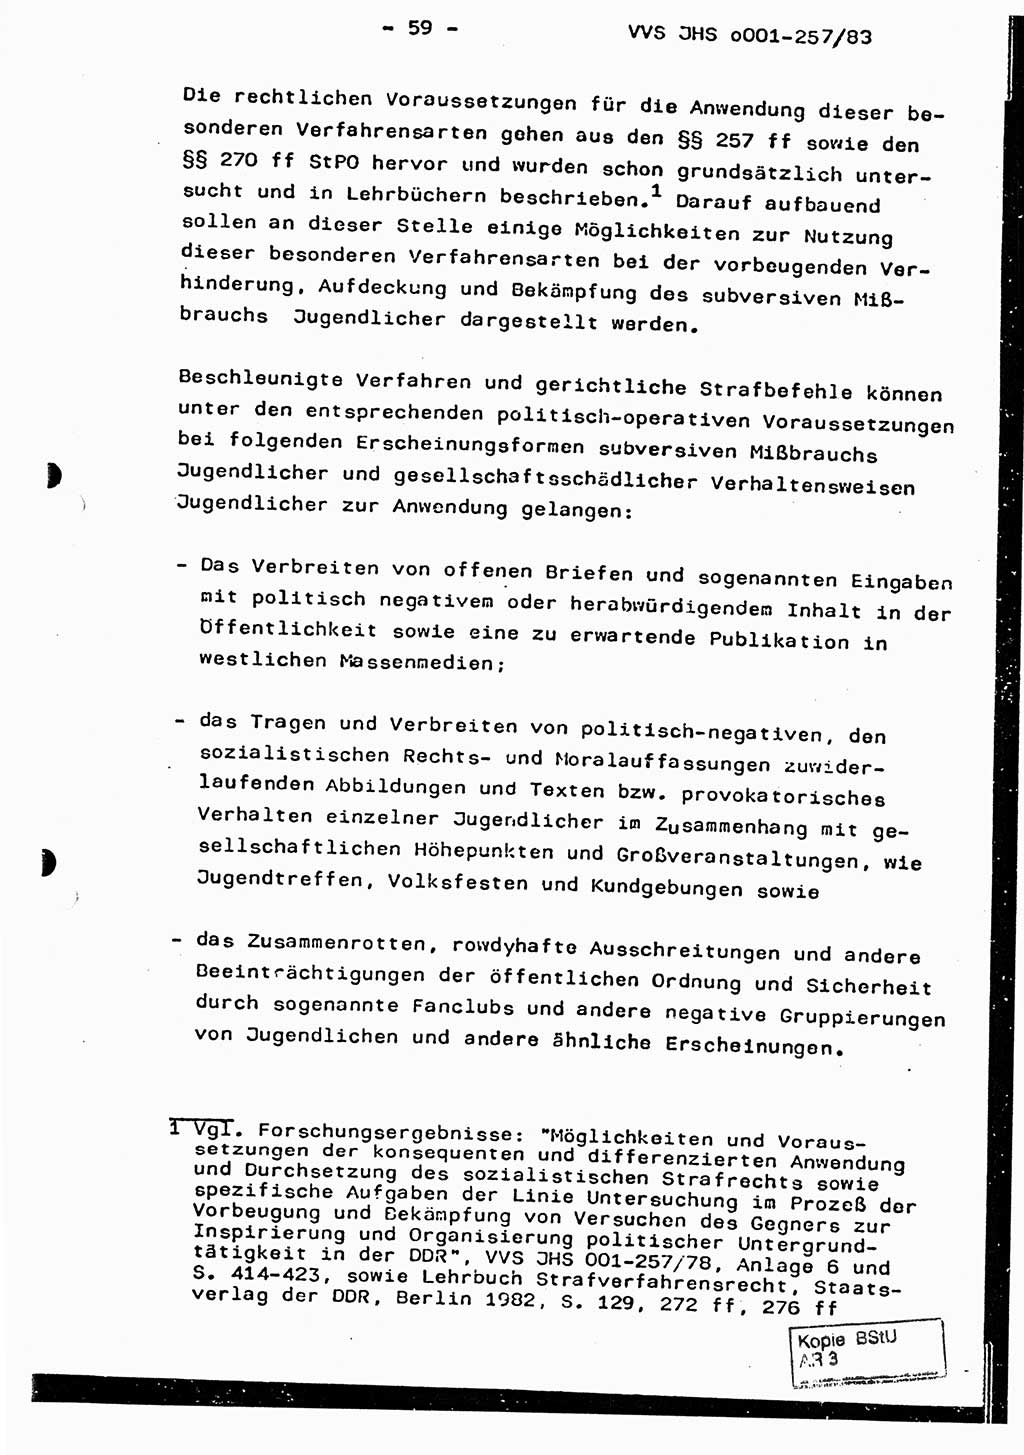 Dissertation, Oberst Helmut Lubas (BV Mdg.), Oberstleutnant Manfred Eschberger (HA IX), Oberleutnant Hans-Jürgen Ludwig (JHS), Ministerium für Staatssicherheit (MfS) [Deutsche Demokratische Republik (DDR)], Juristische Hochschule (JHS), Vertrauliche Verschlußsache (VVS) o001-257/83, Potsdam 1983, Seite 59 (Diss. MfS DDR JHS VVS o001-257/83 1983, S. 59)